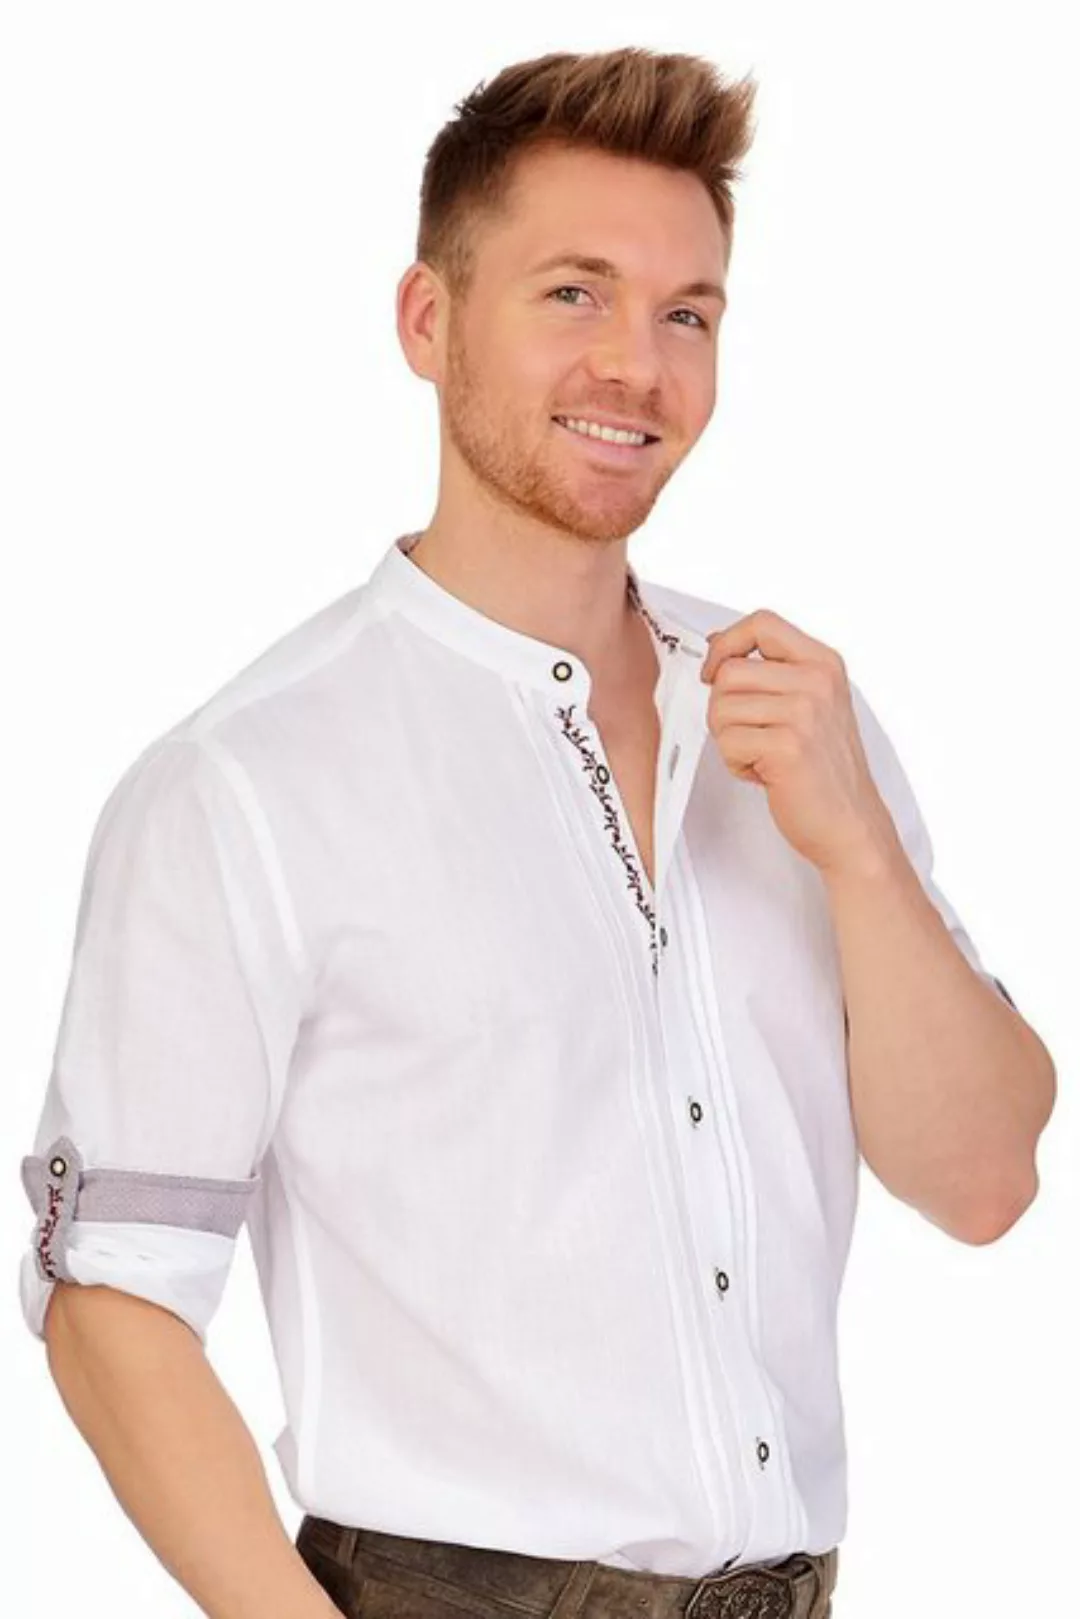 KRÜGER BUAM Trachtenhemd Trachtenhemd - JONAS - weiß/bordeaux günstig online kaufen